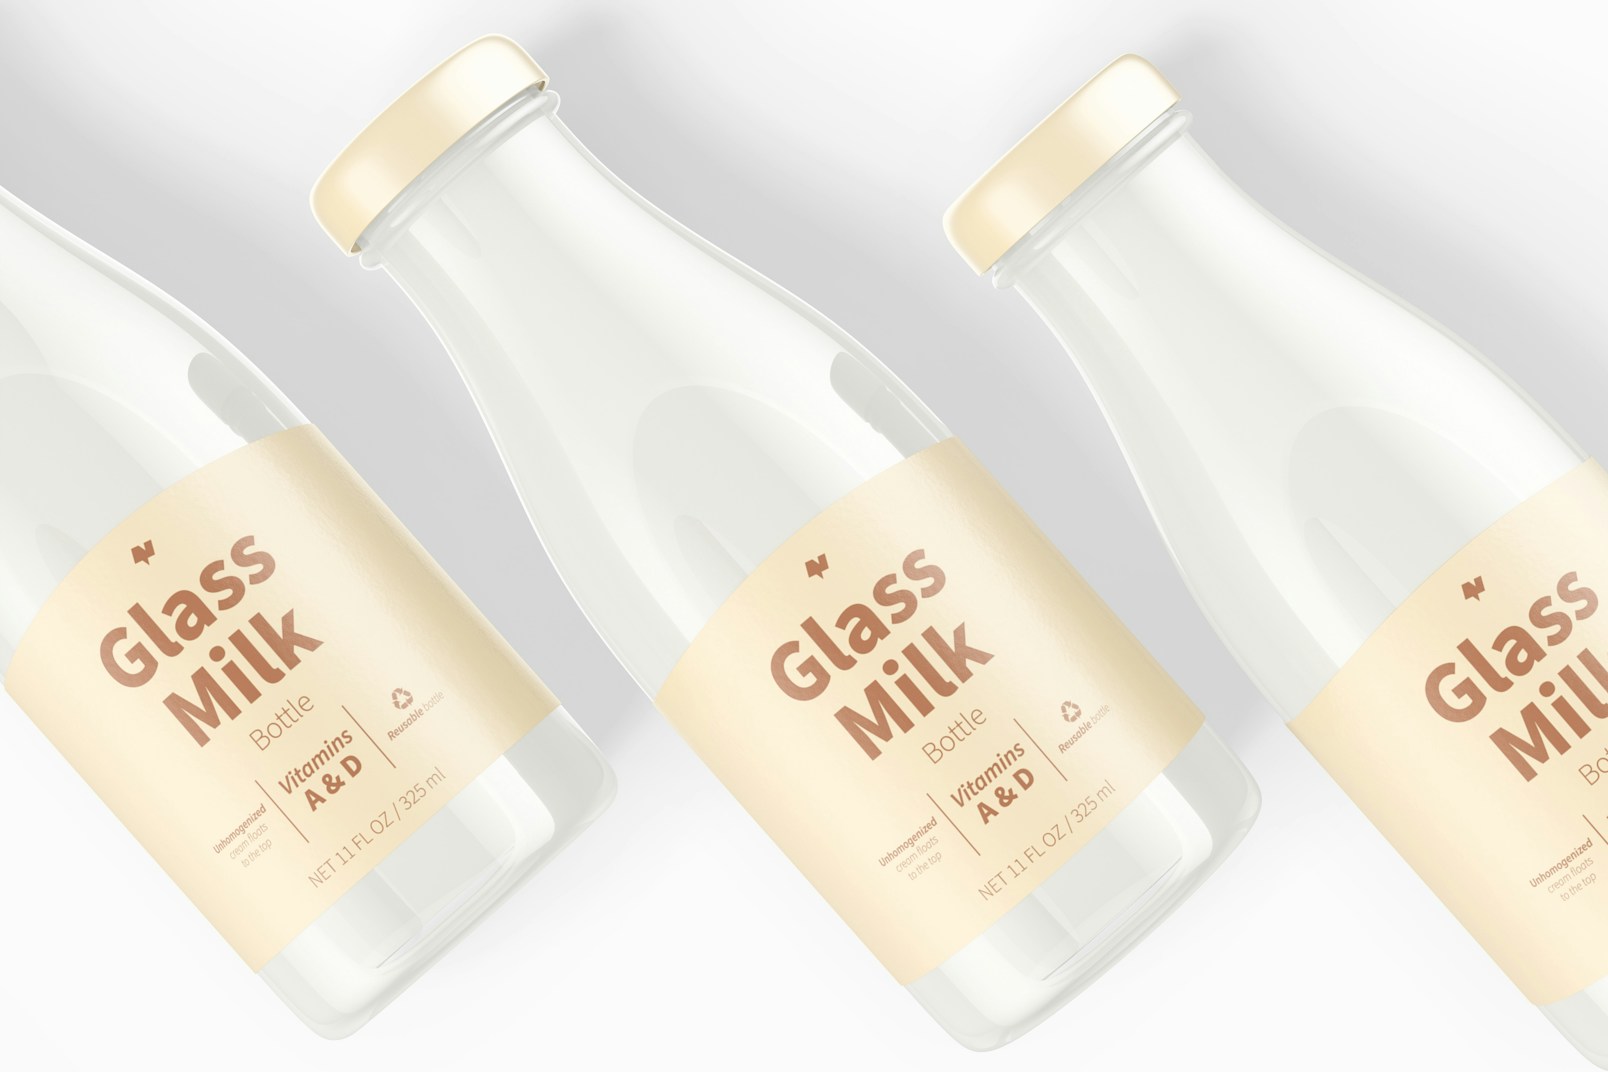 11 oz Glass Milk Bottles Mockup, Close Up